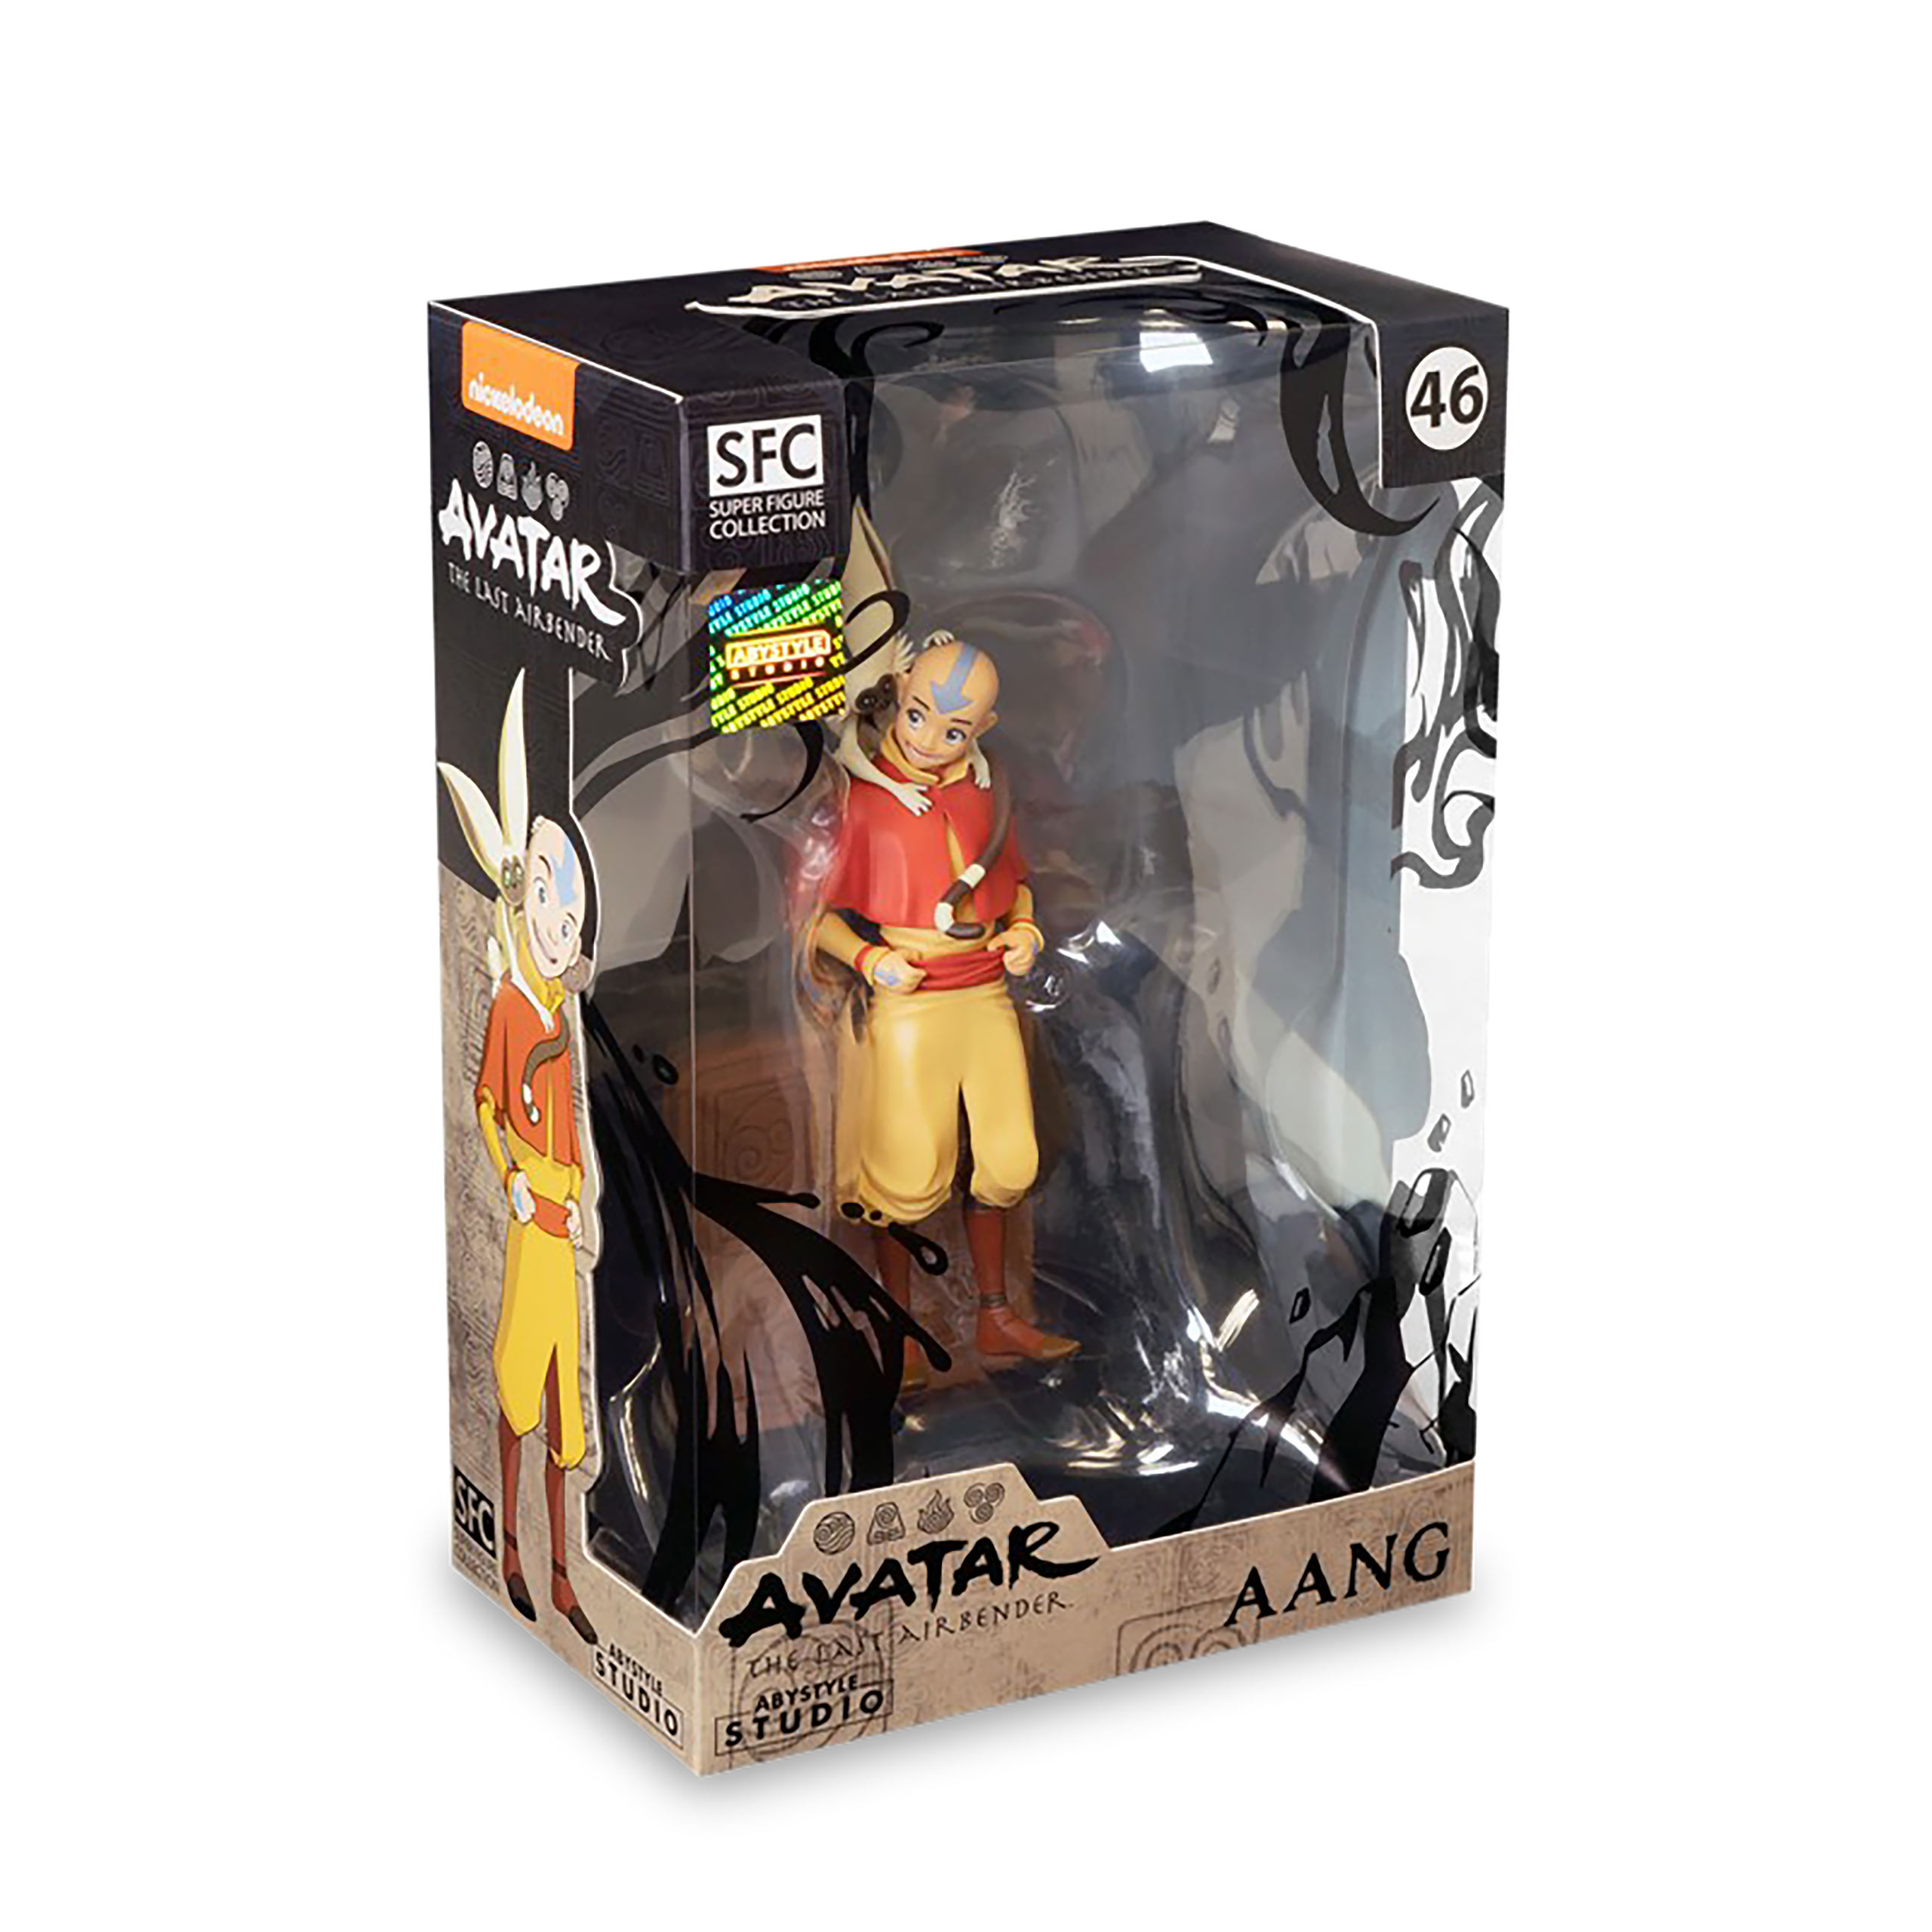 Avatar - Le Dernier Maître de l'Air - Figurine Aang SFC